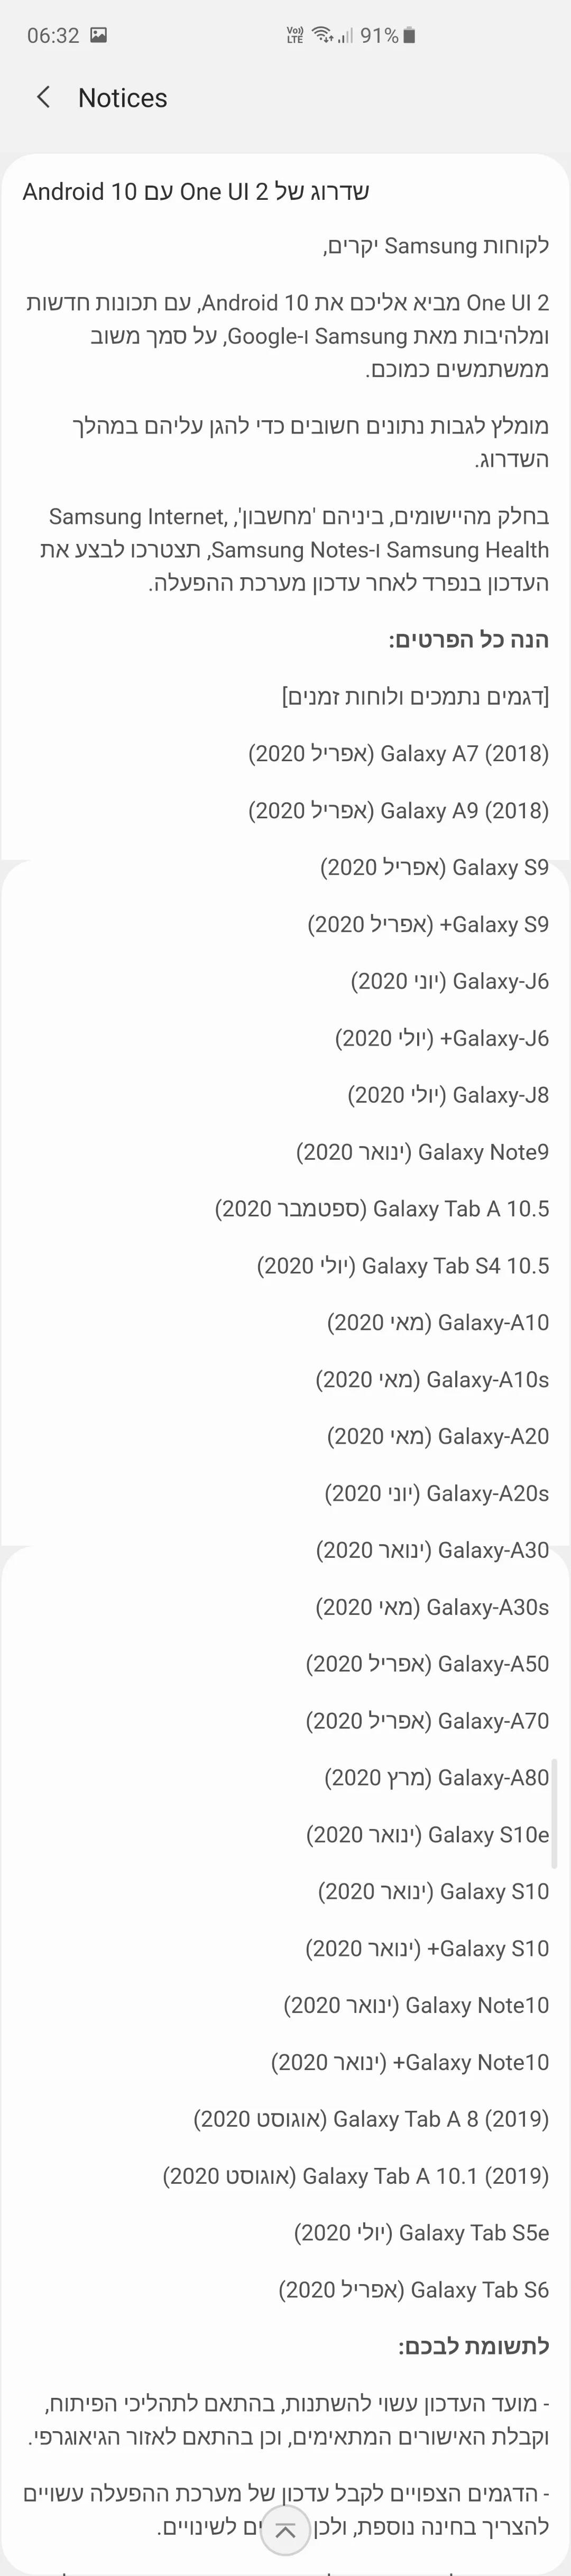 Android 10 releasedatum Samsung-telefoons